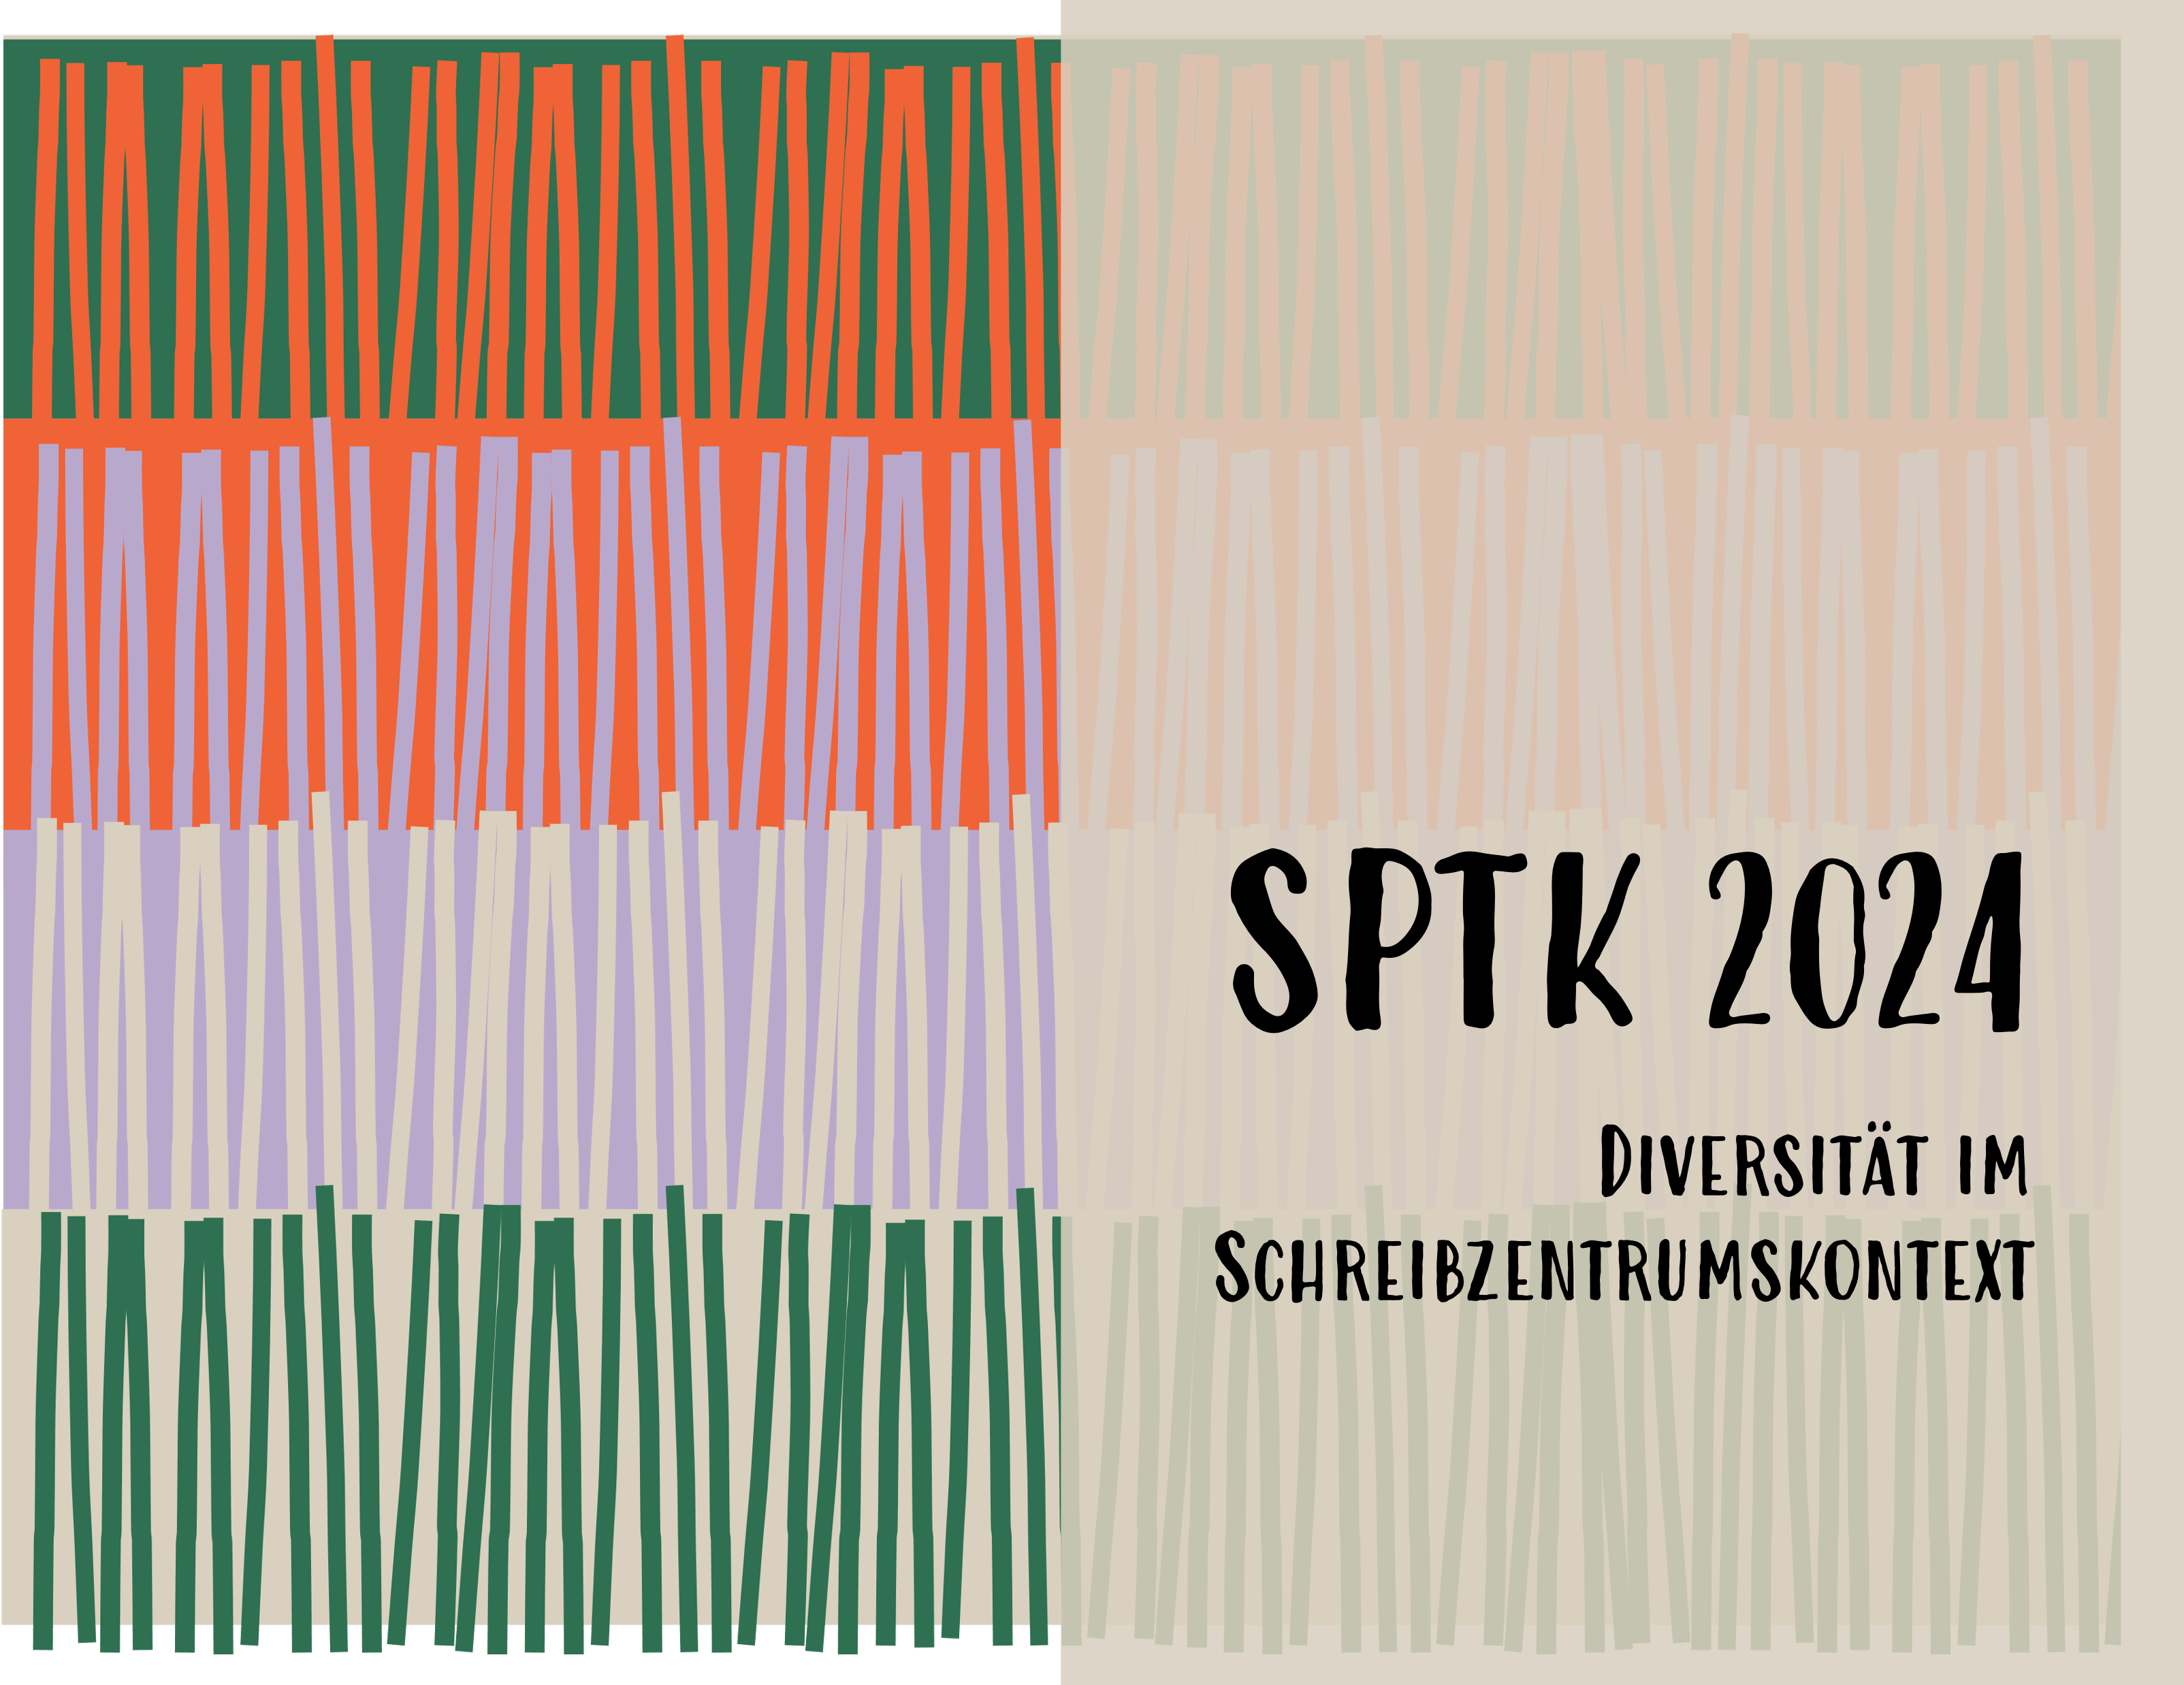 SPTK 2024